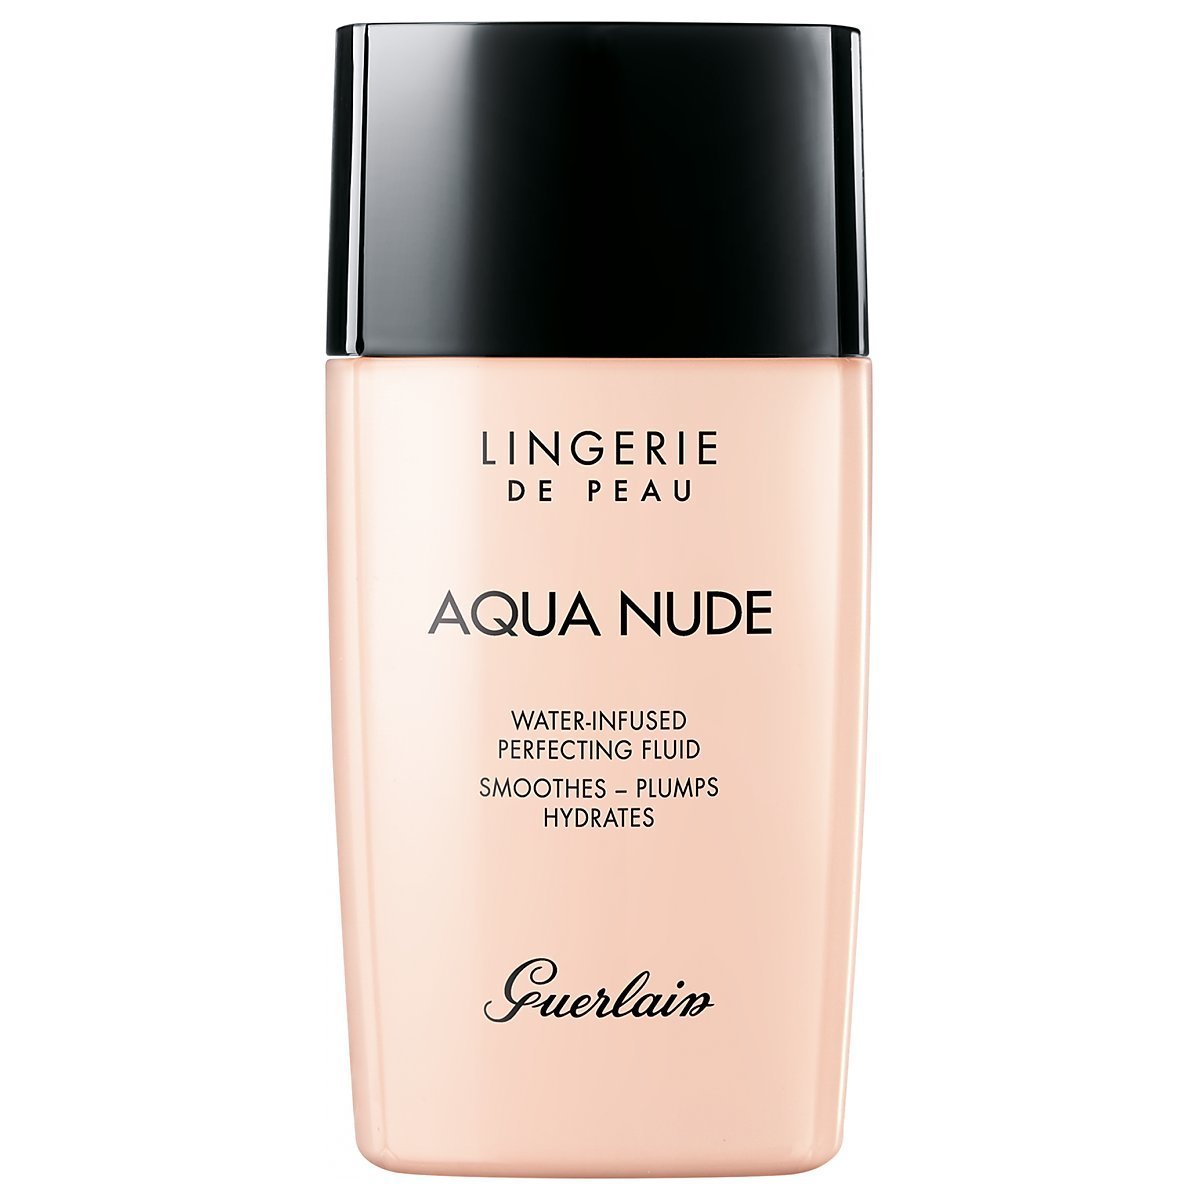 Guerlain Lingerie De Peau Aqua Nude Water-Infused 